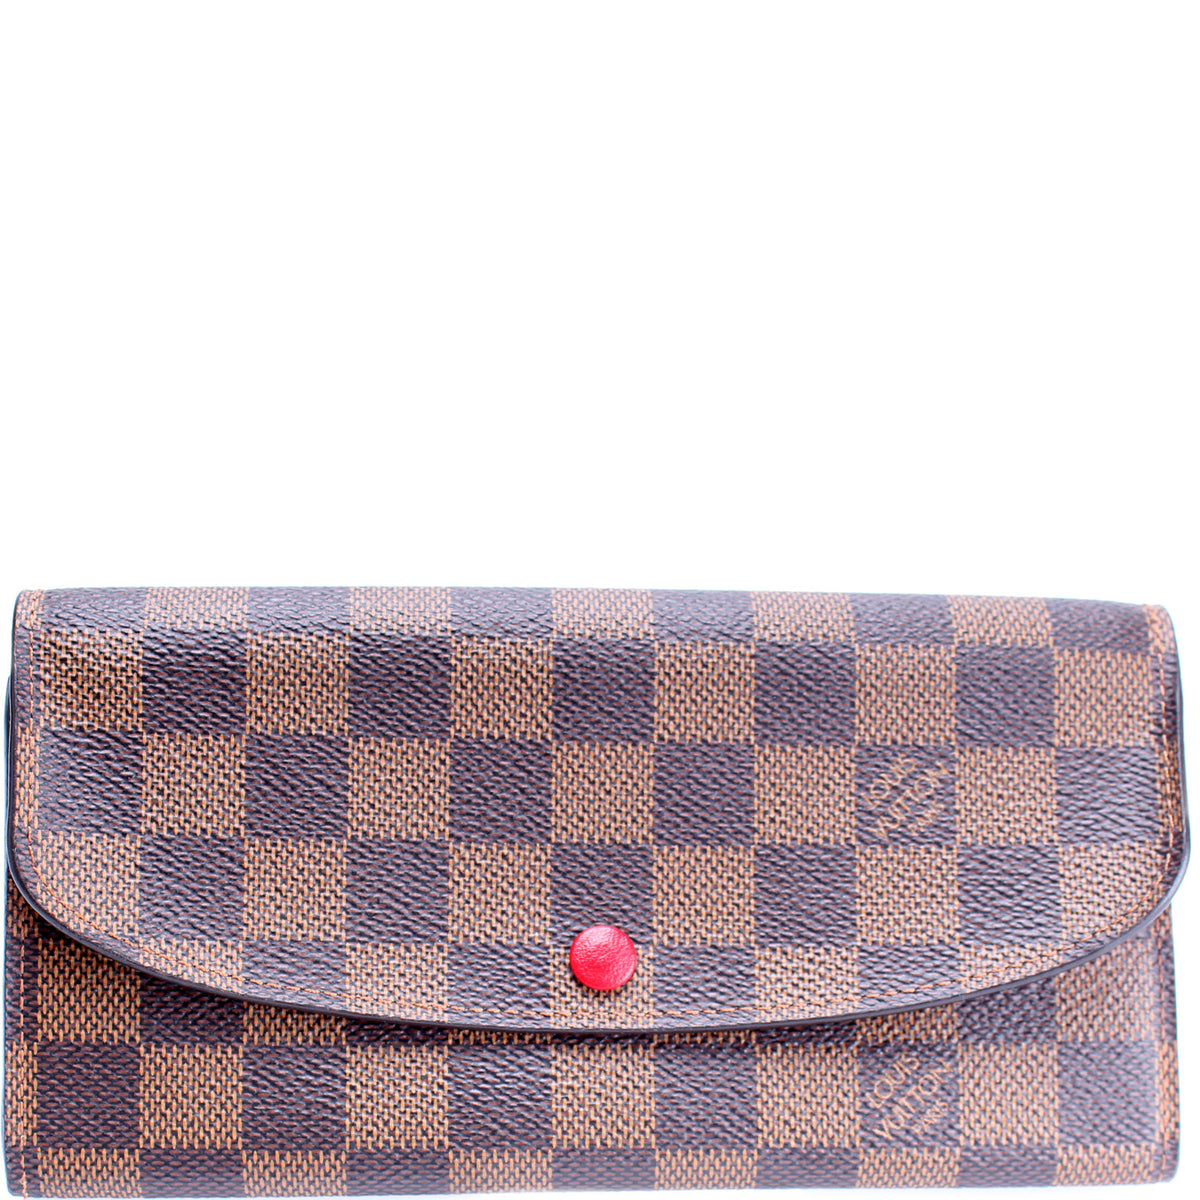 Shop Louis Vuitton Emilie wallet (N63544, N60214) by lemontree28